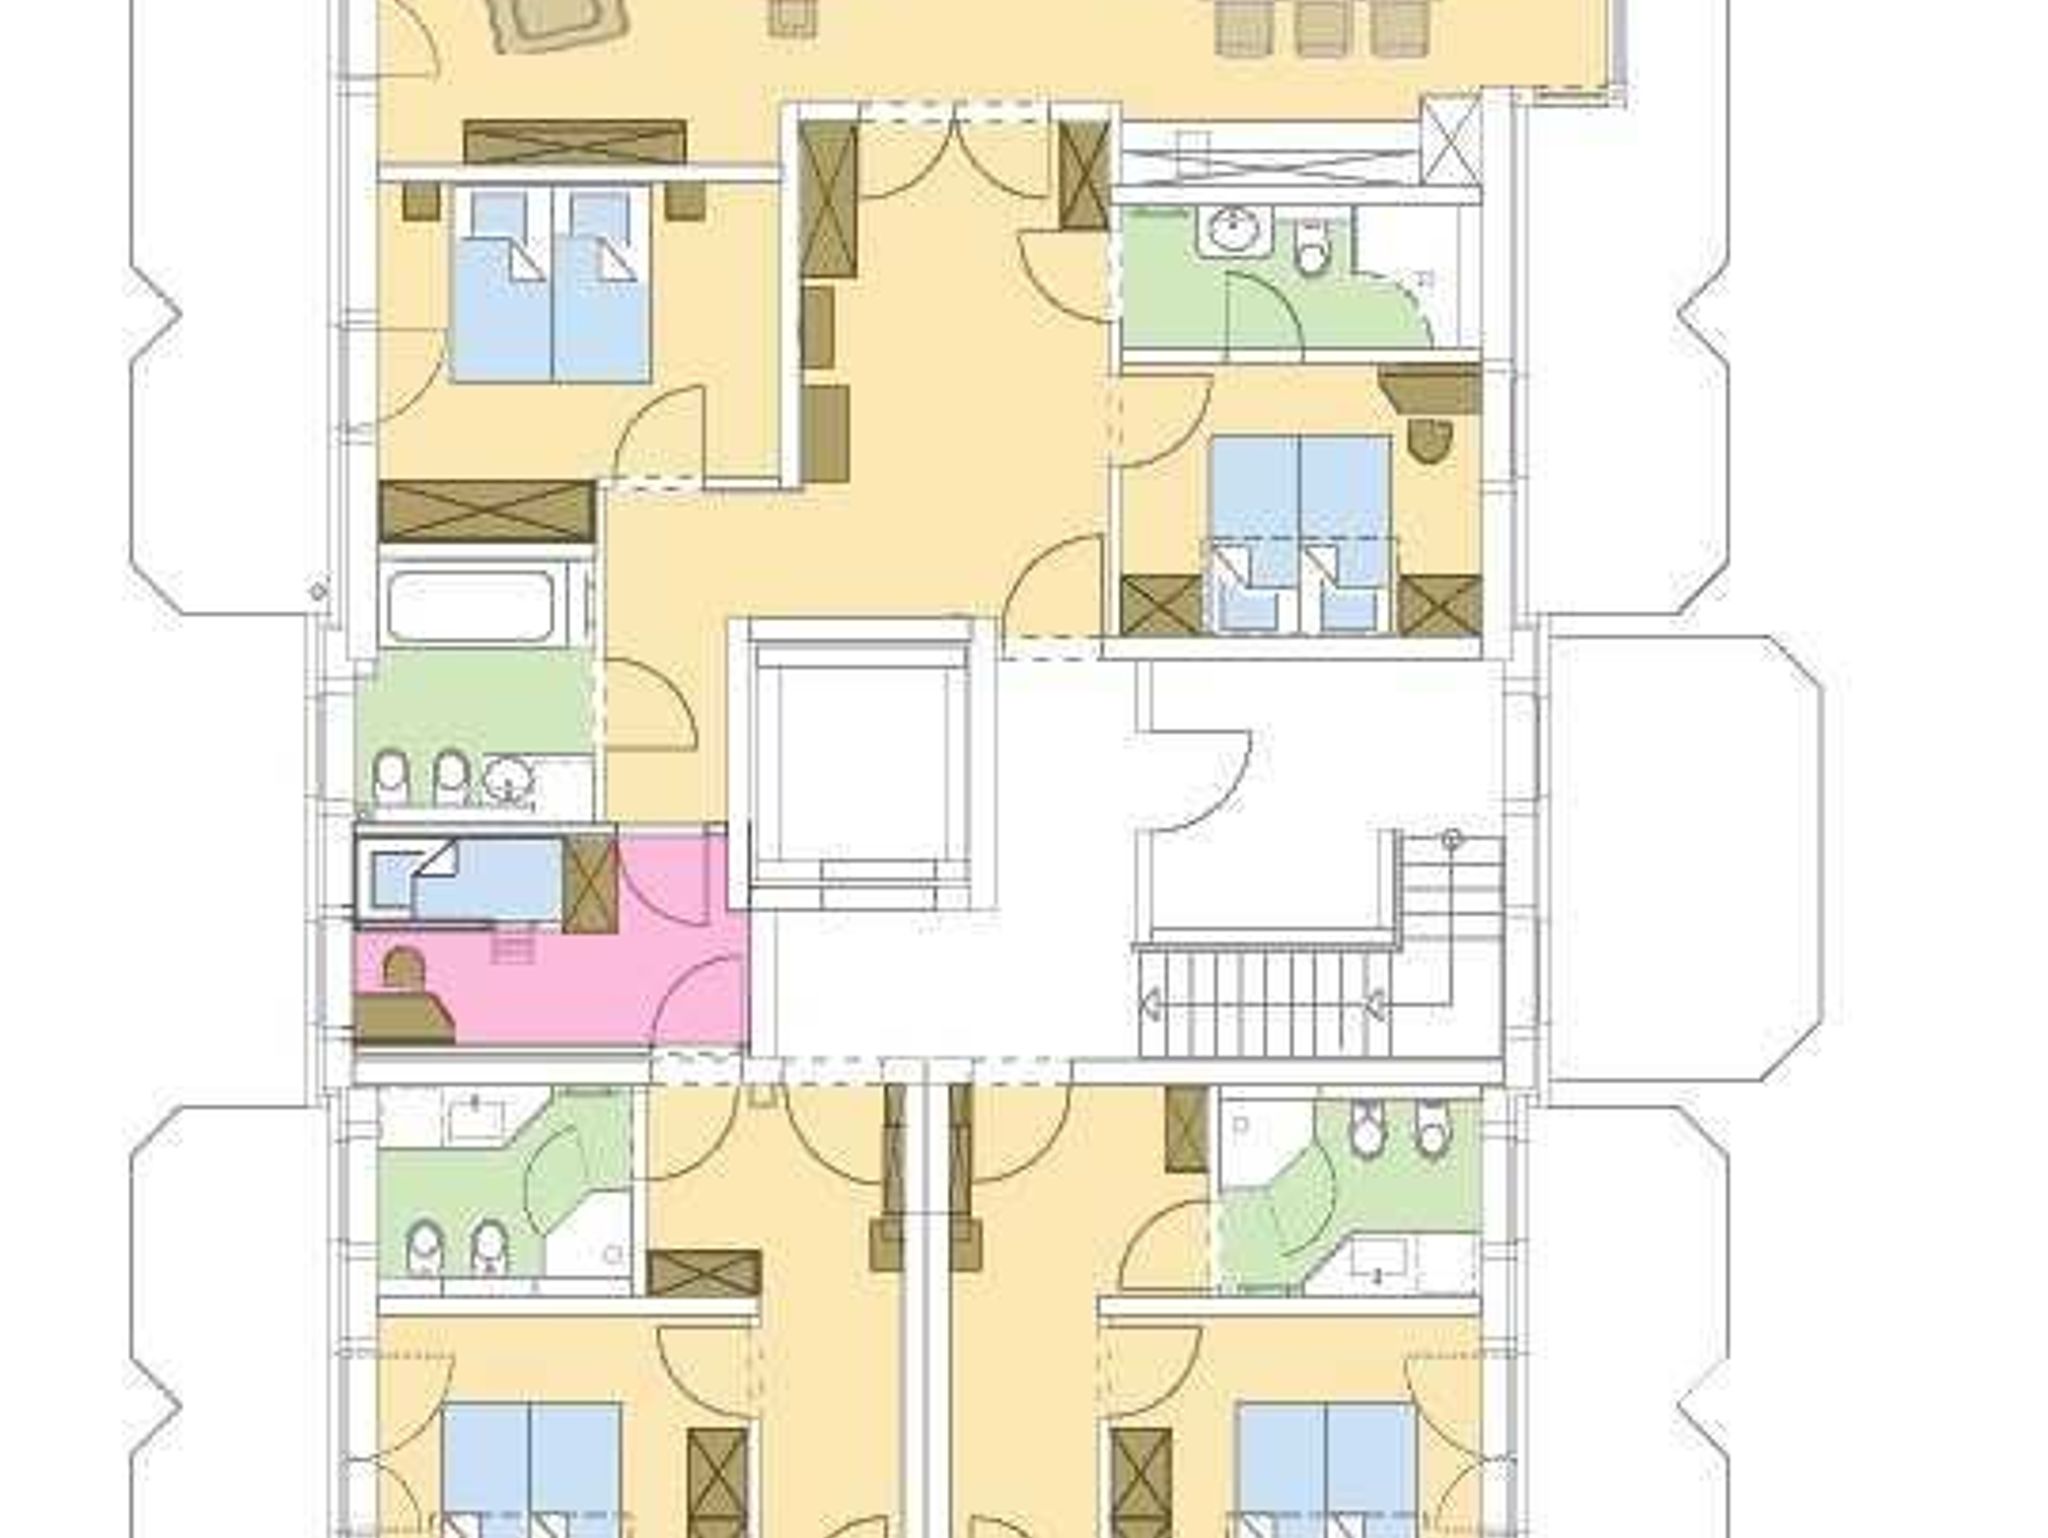 Strandresidenz-Kühlungsborn***** Grundriss der Wohnungen 4, 5 und 6. Das rosa gekennzeichnete Zimmer zwischen den  Wohnungen 4 und 5 ist ein Kinderzimmer, daß von beiden Wohnungen genutzt werden kann.